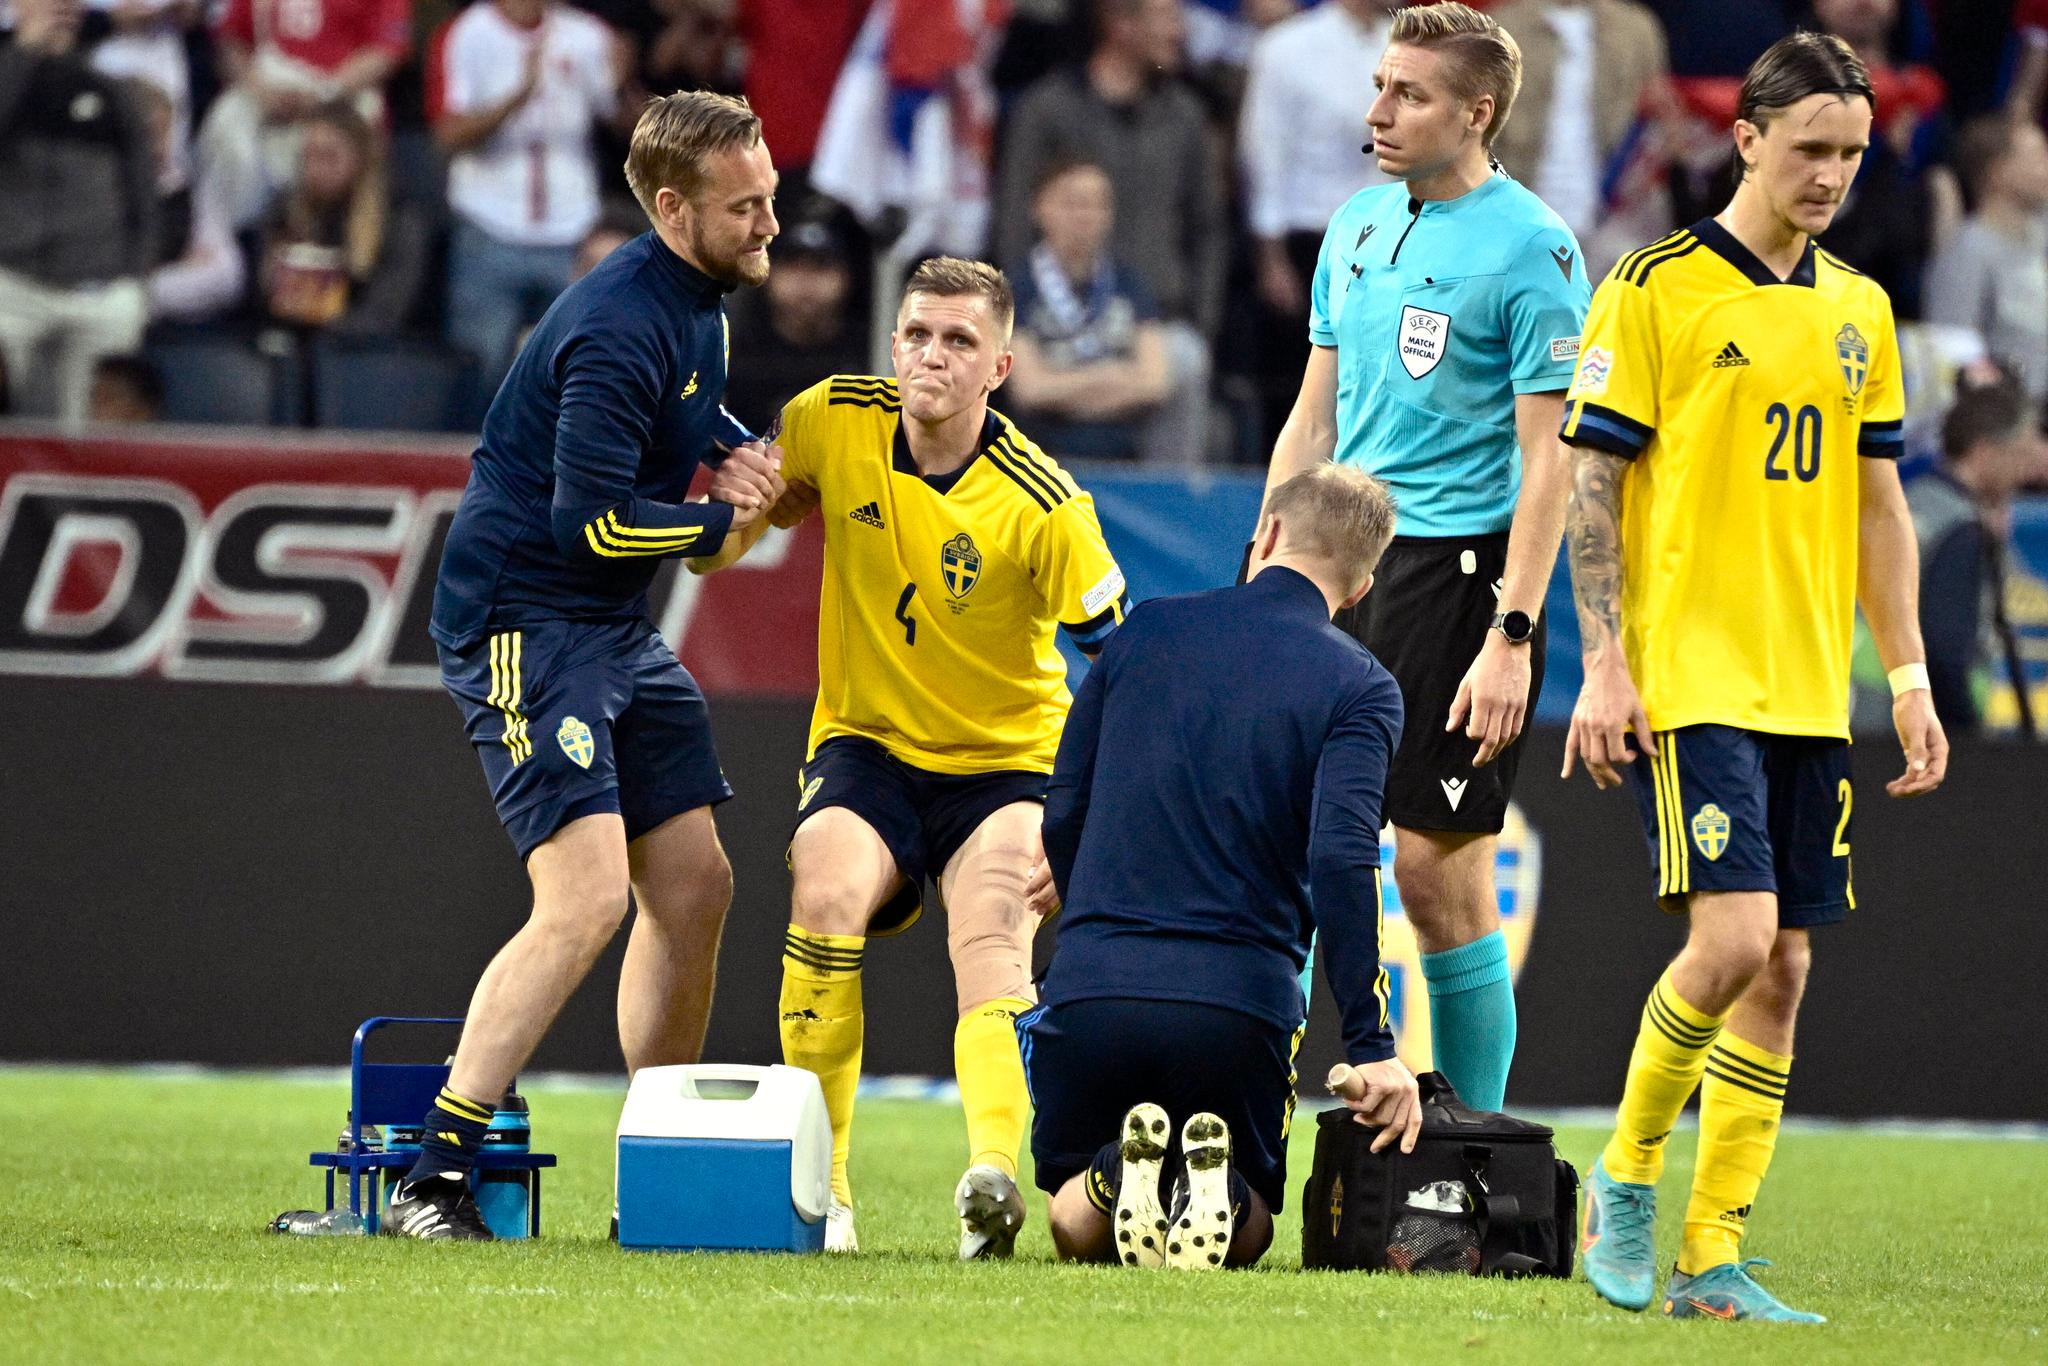 SKADET: Midtstopper Joakim Nilsson måtte av banen i 1. omgang på grunn av skade. Før torsdagens kamp hadde Sverige allerede fire midtstoppere ute med skade.